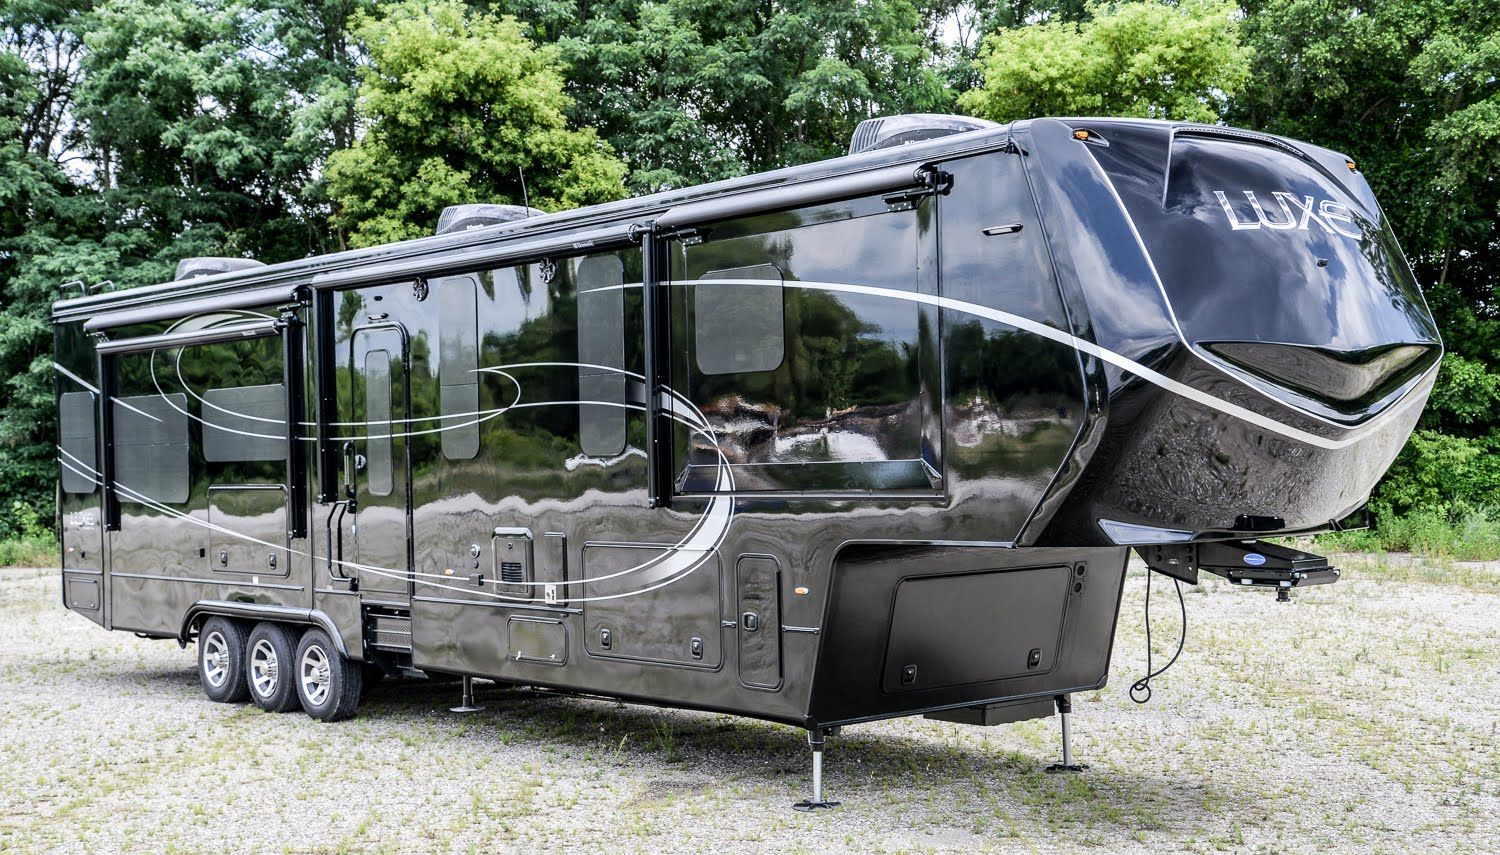 Jetez Un Oeil À Ce Camping-Car Grand Luxe Complètement Fou ... destiné Camping Car De Luxe Avec Piscine